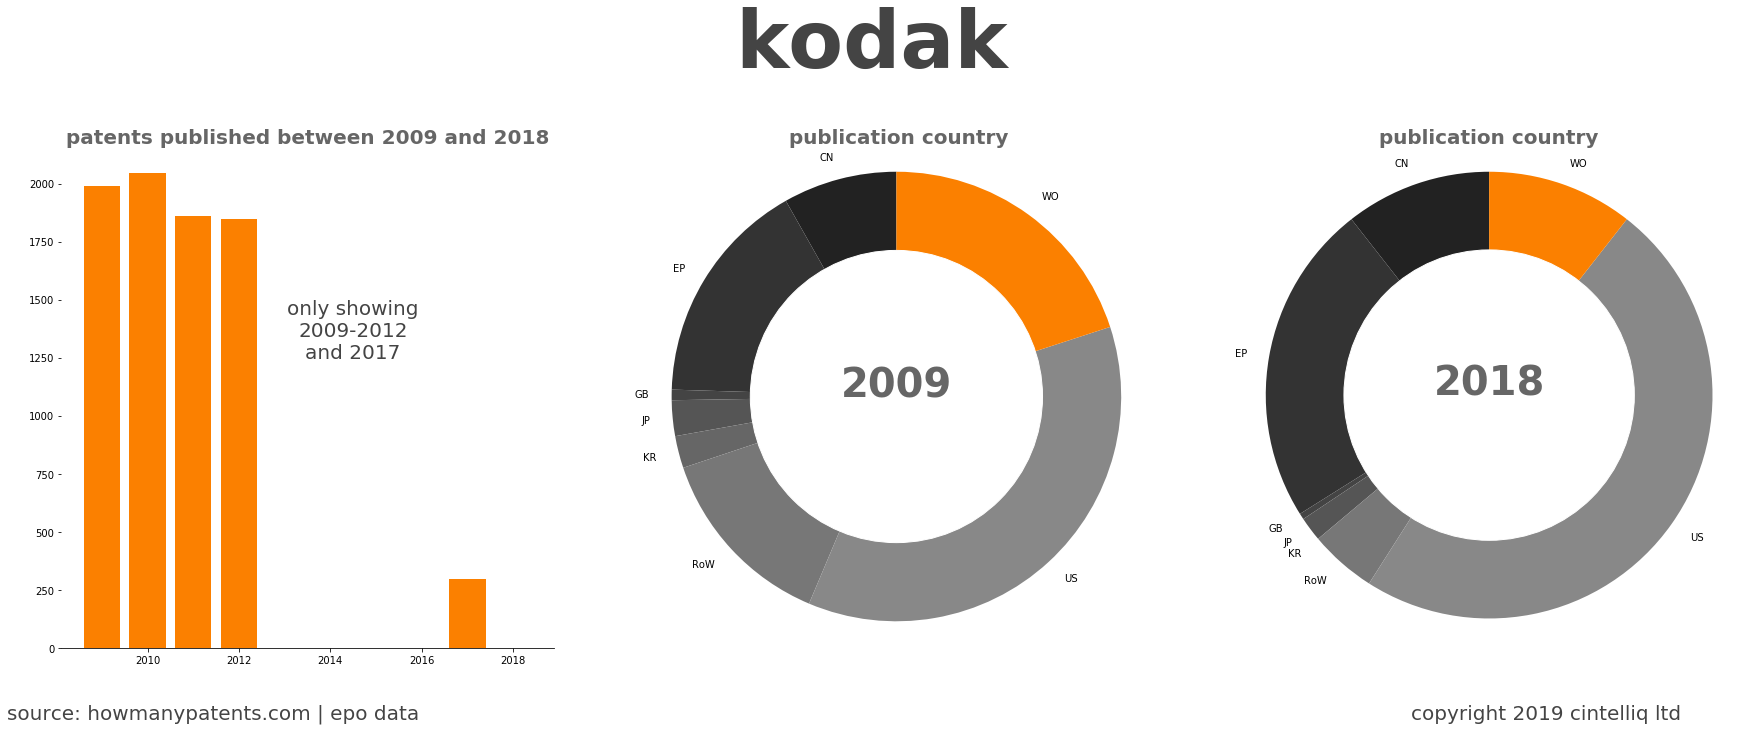 summary of patents for Kodak